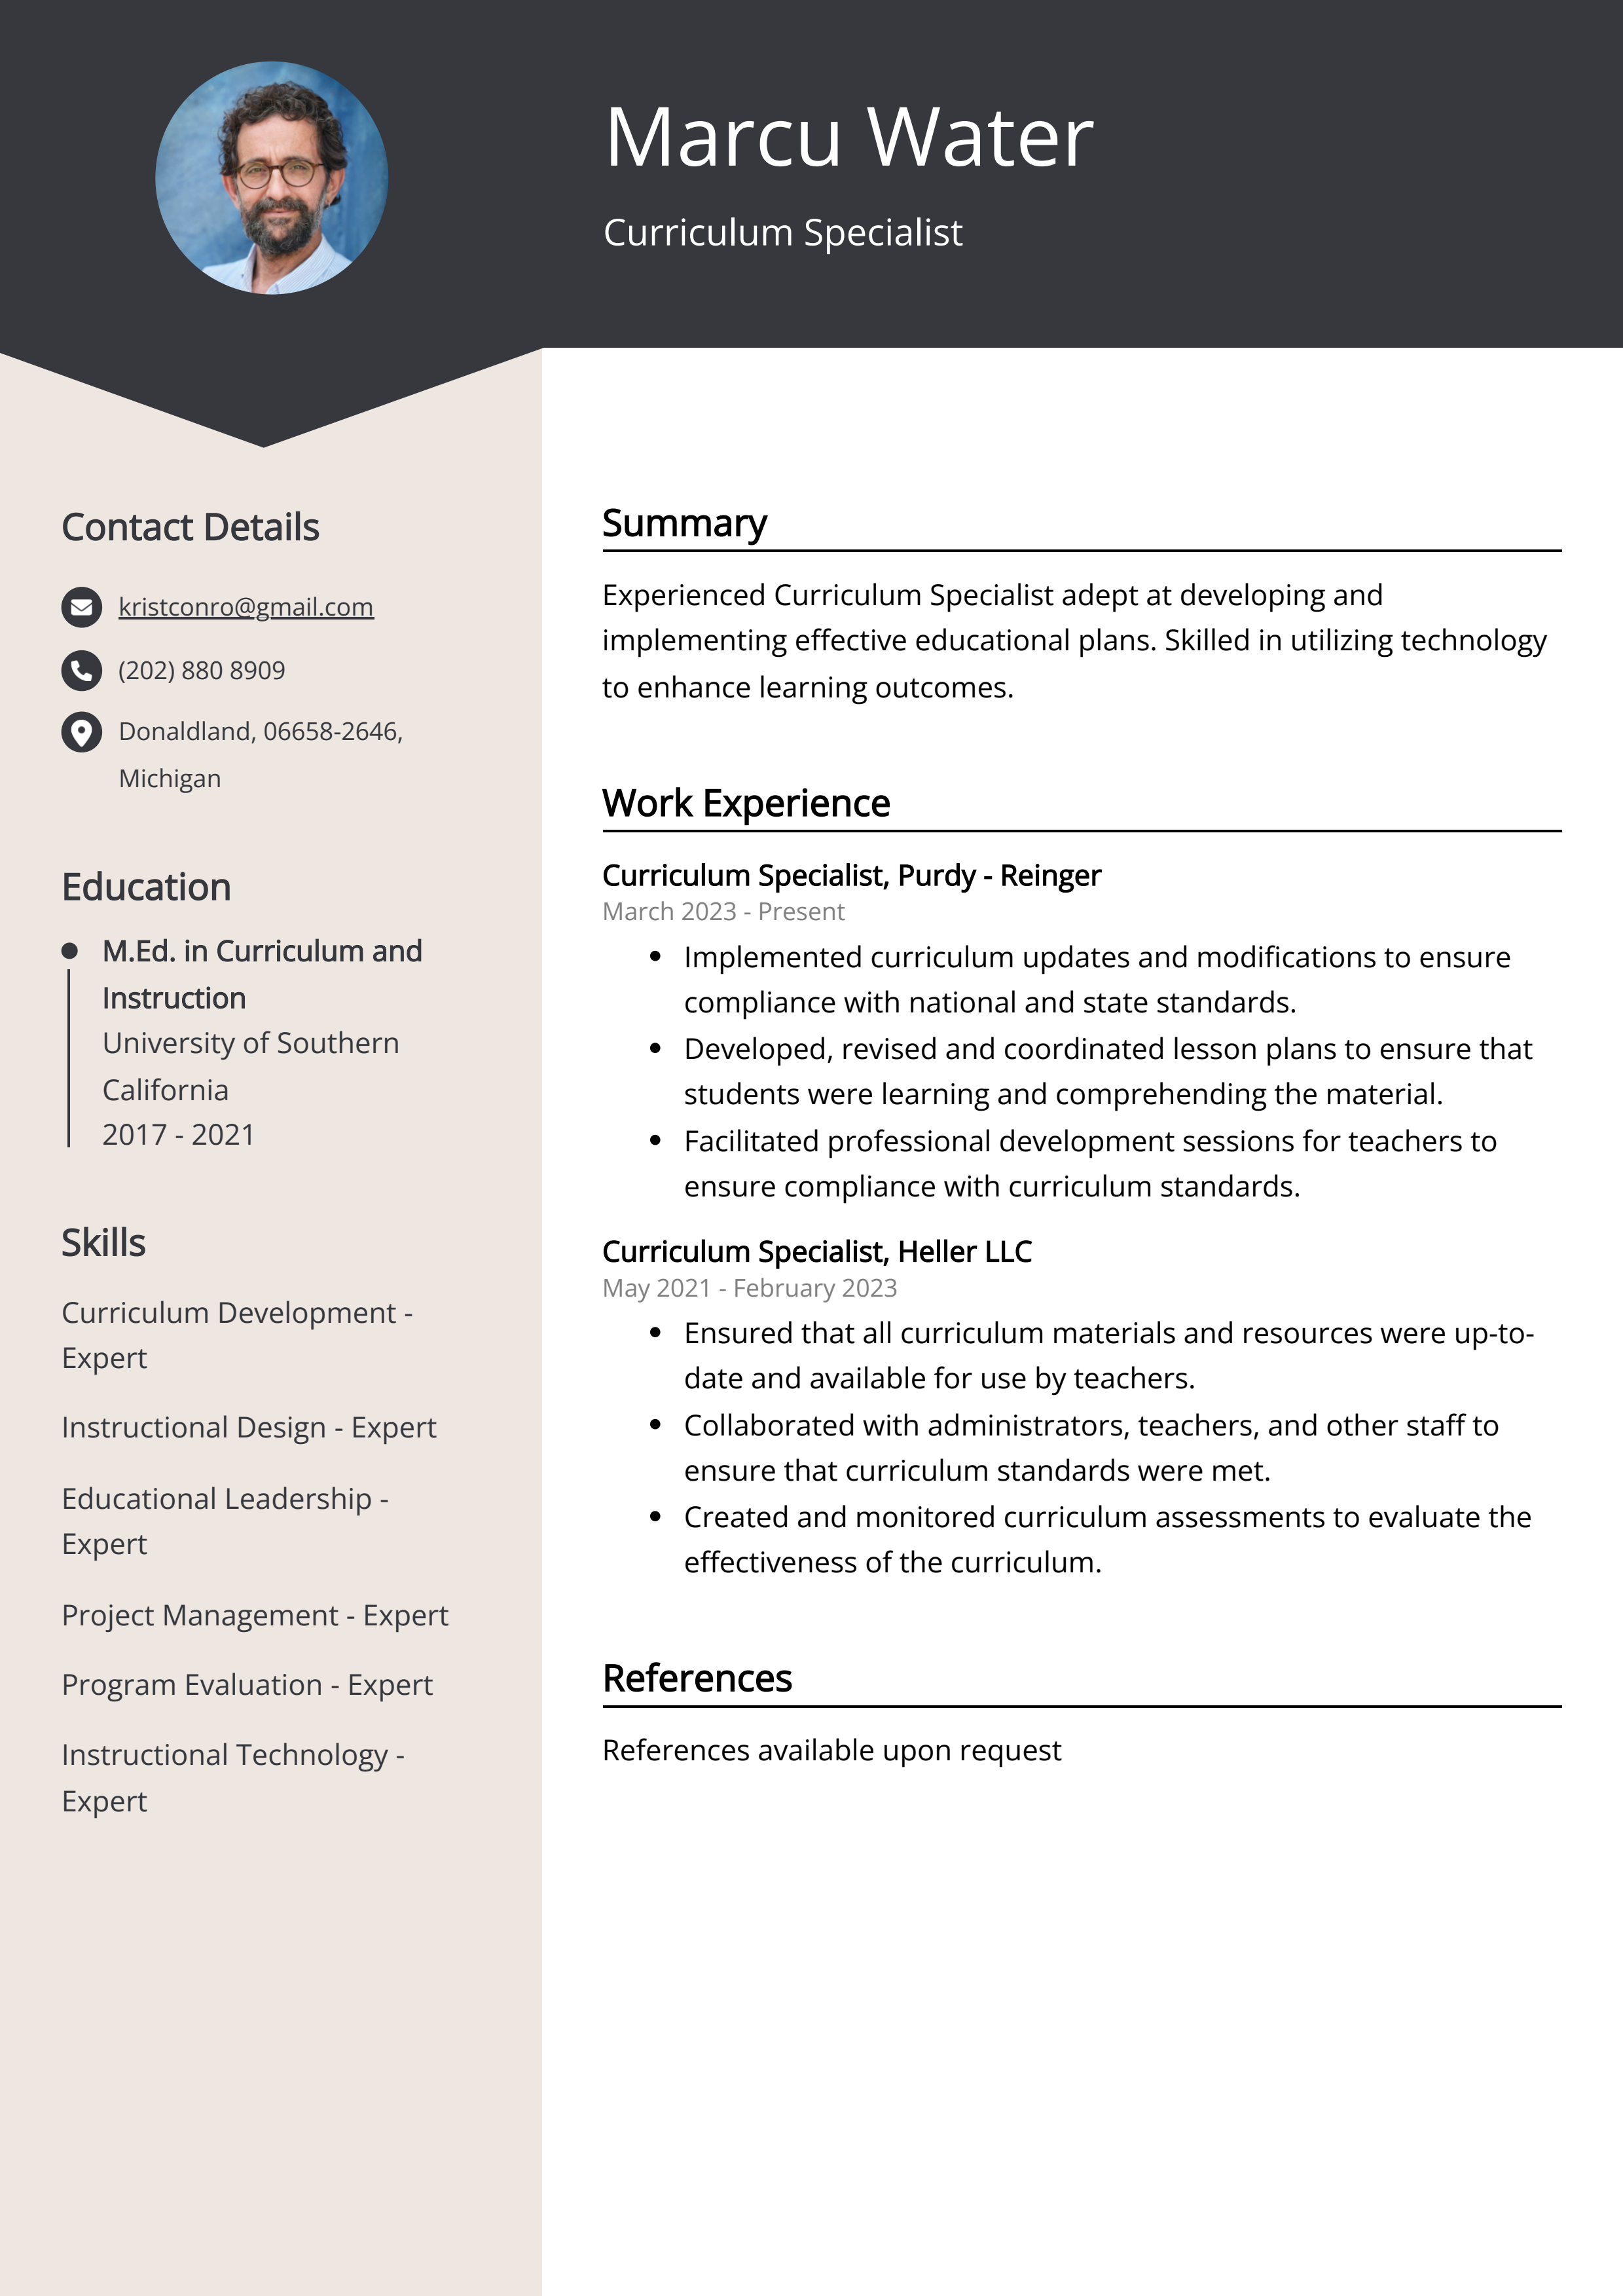 Curriculum Specialist CV Example